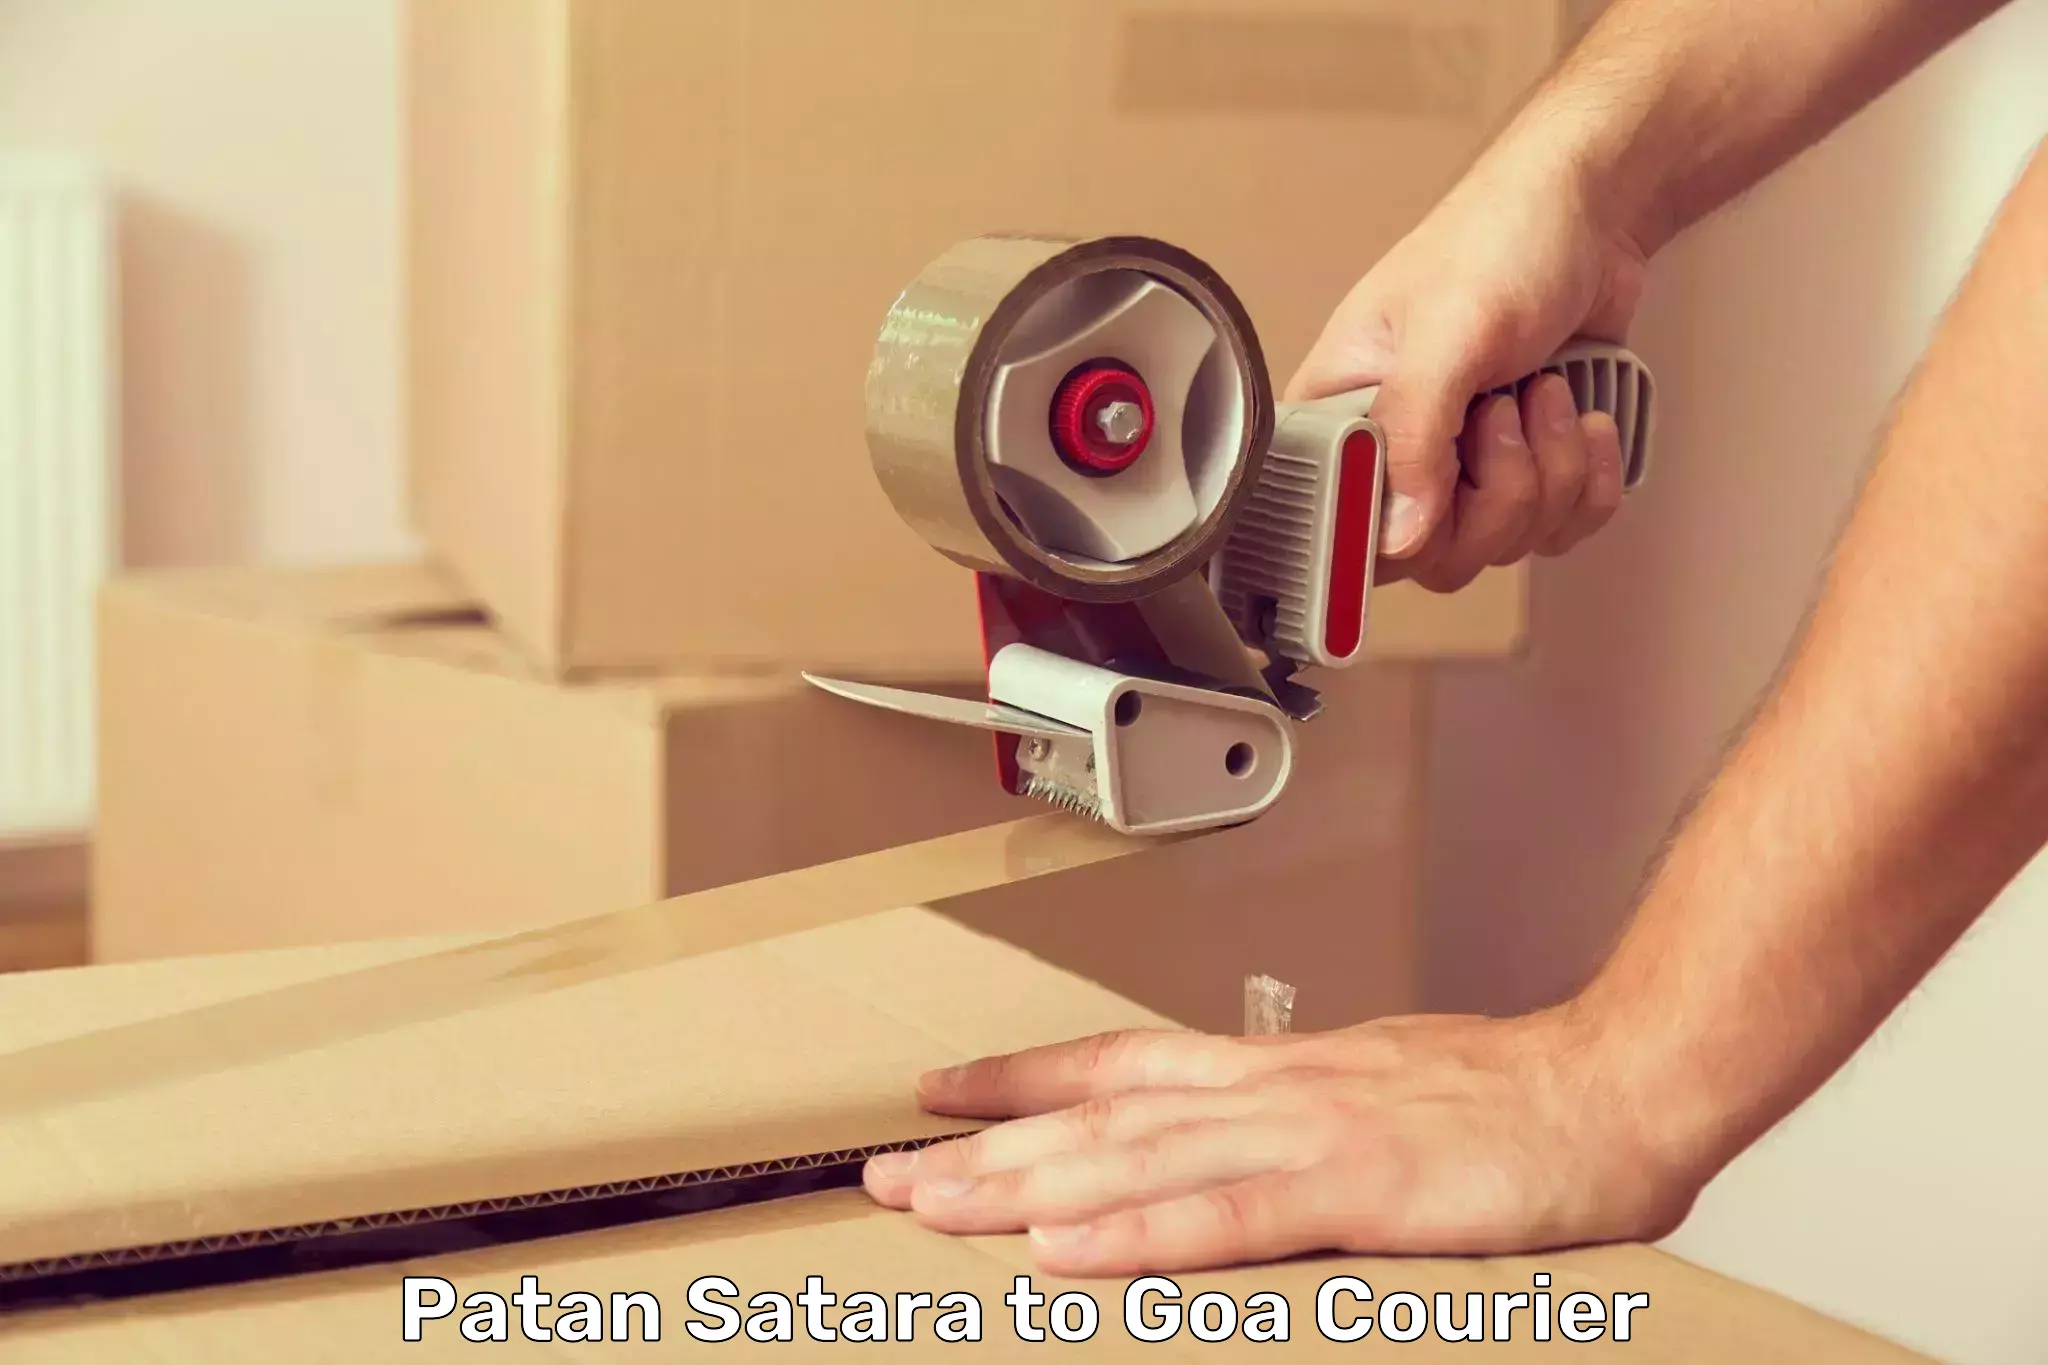 Online courier booking Patan Satara to Goa University